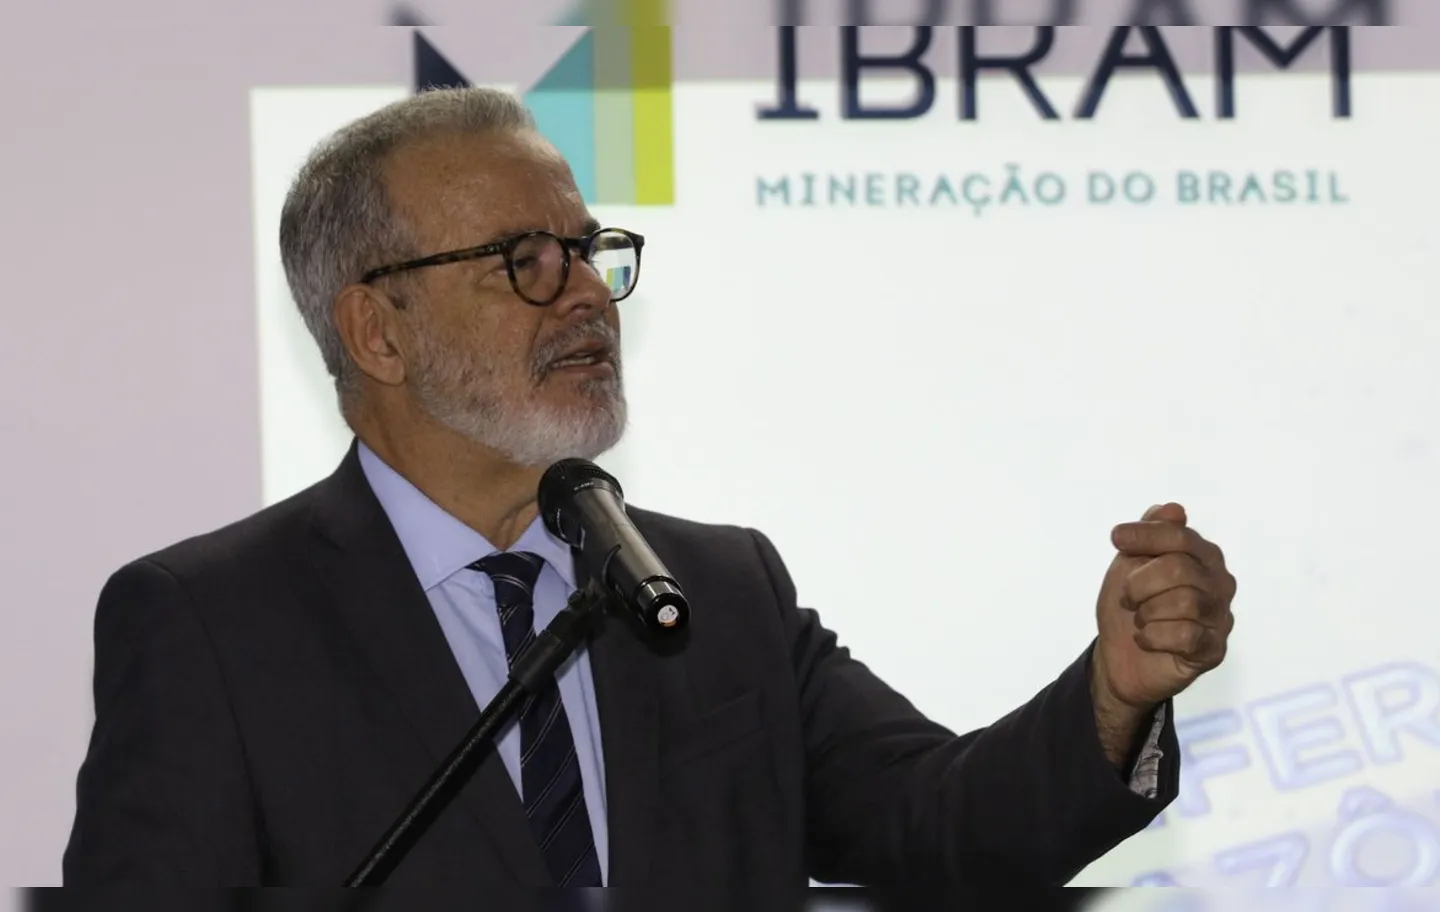 Presidente do Instituto Brasileiro de Mineração (Ibram), Raul Jungmann